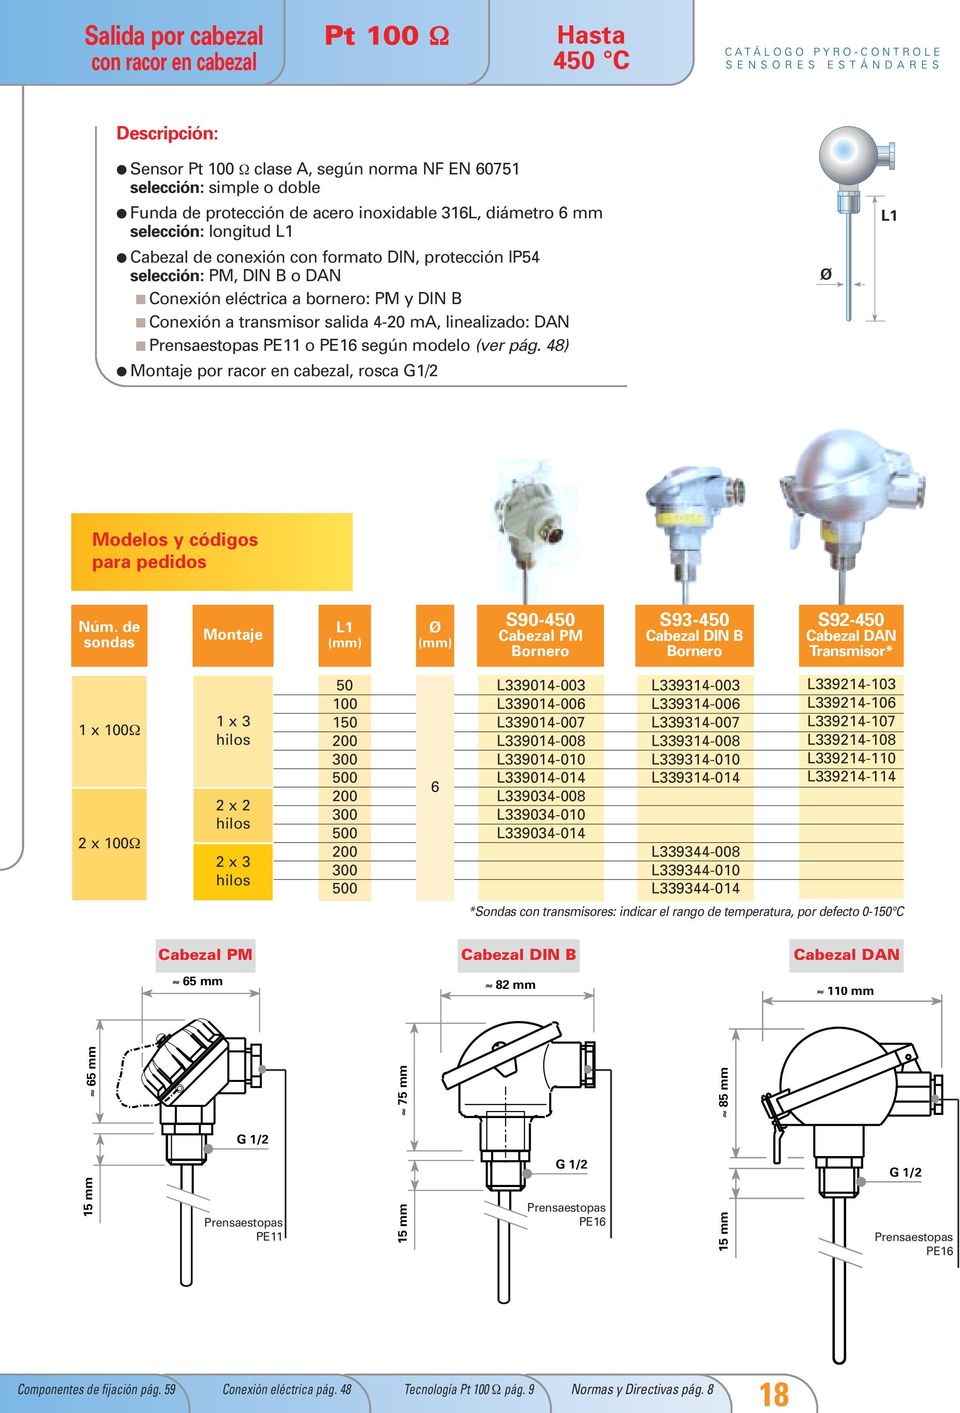 Prensaestopas PE o PE6 según modelo (ver pág. 48) Montaje por racor en cabezal, rosca G/ Modelos y códigos para pedidos Núm.